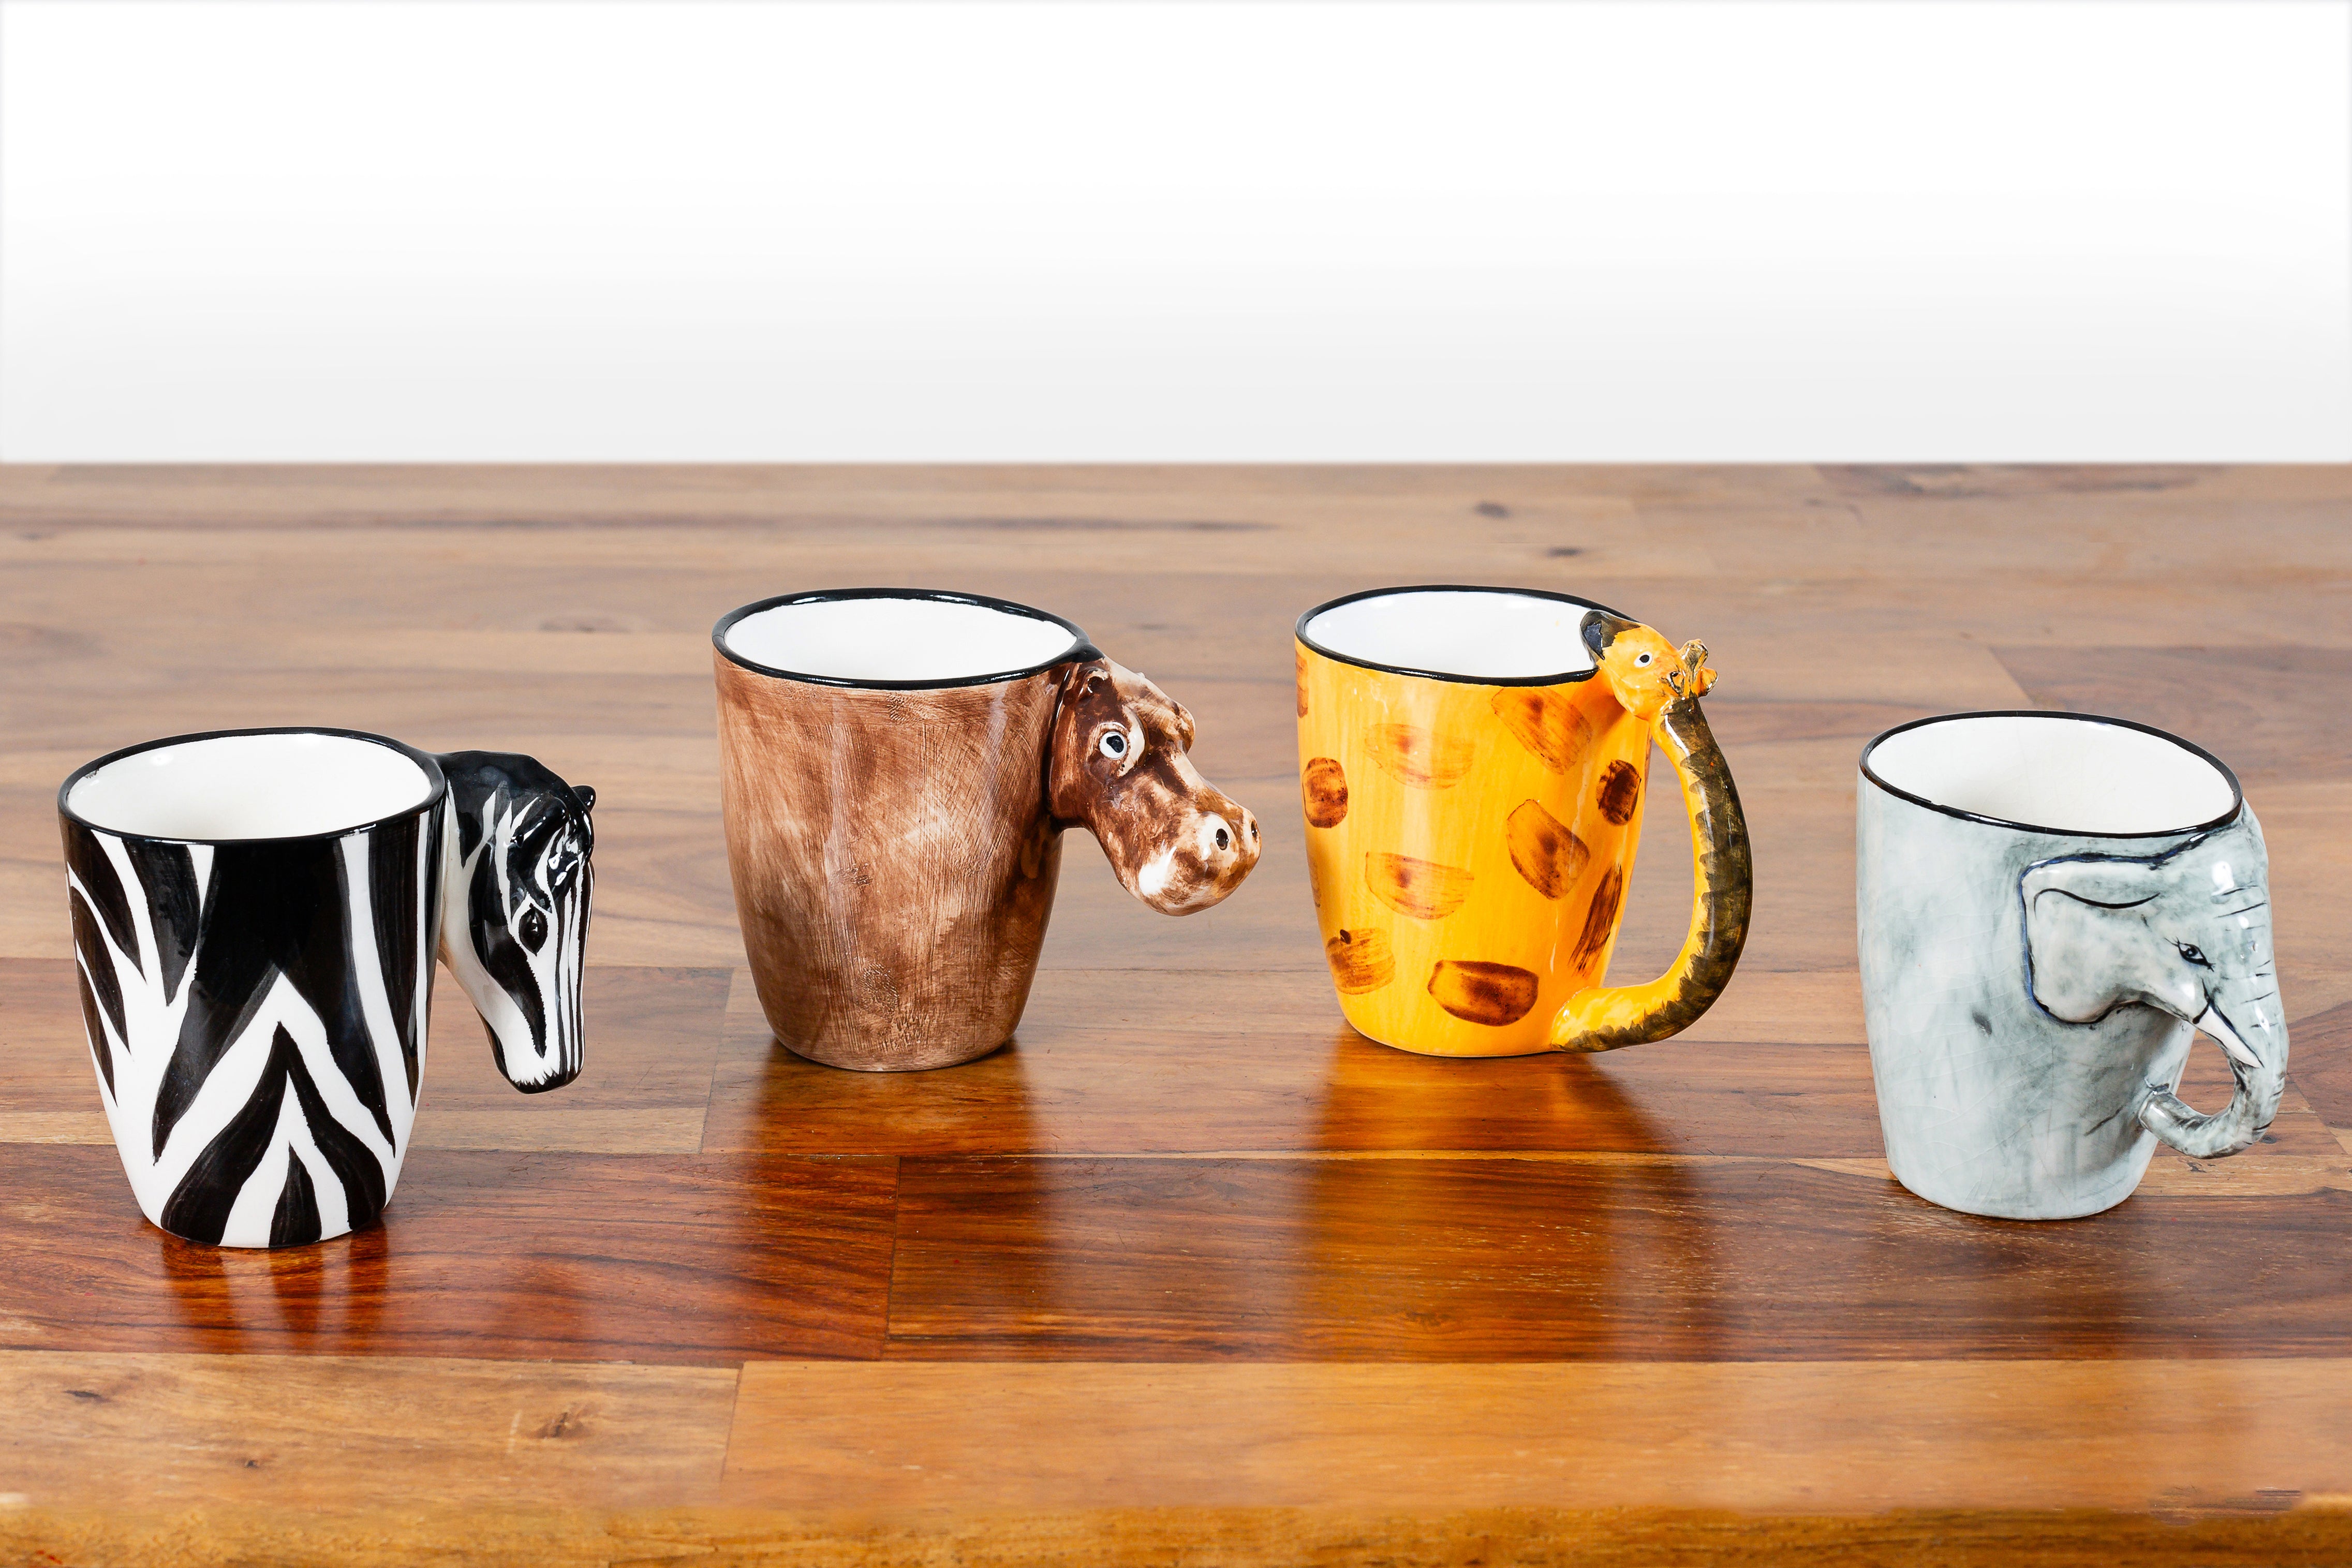 All 4 whimsy ceramic animal mugs! From left, Zebra, Hippo, Giraffe and Elephant!